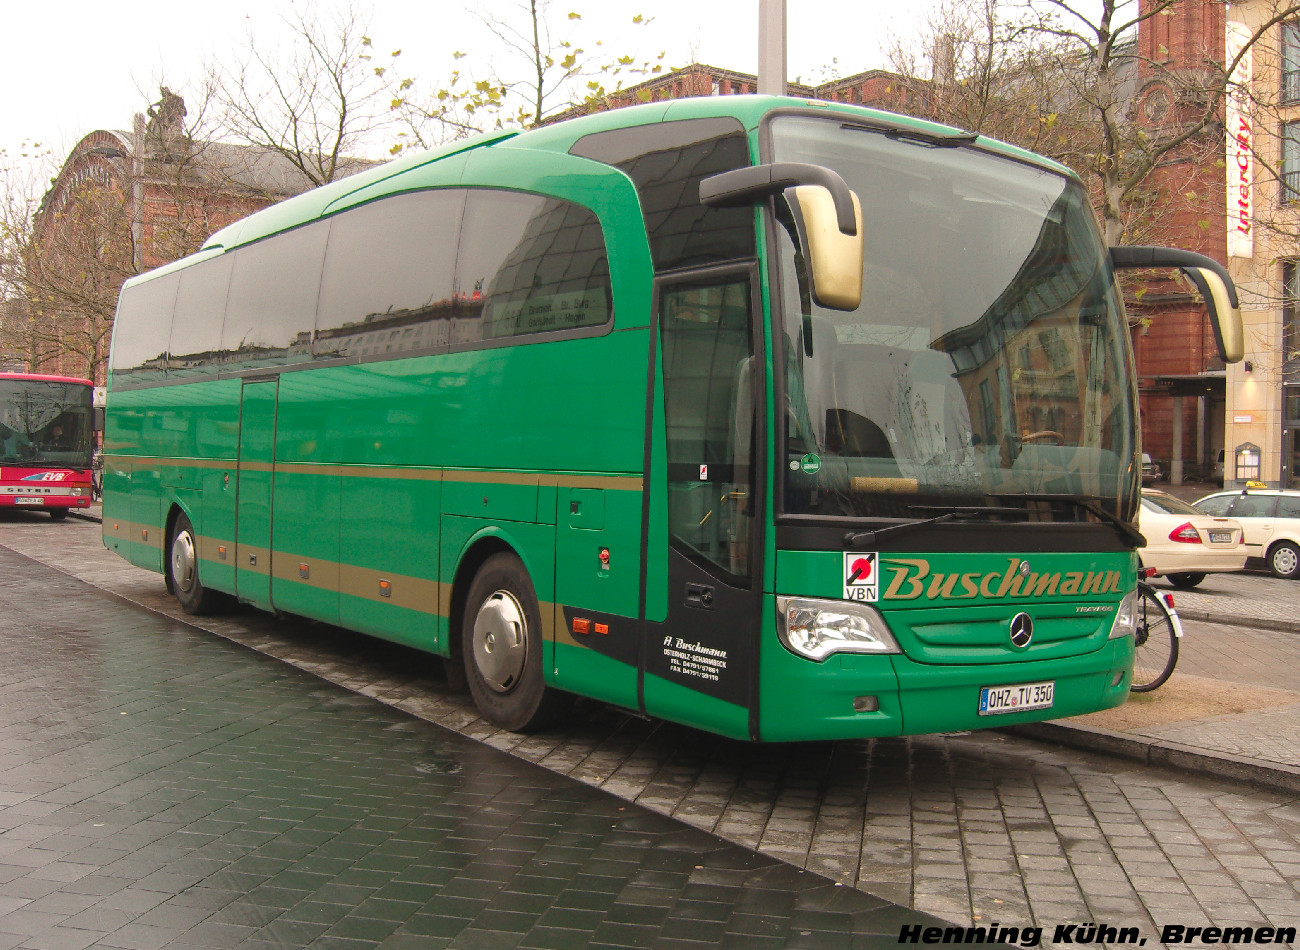 Mercedes-Benz Travego 15RHD #OHZ-TV 350